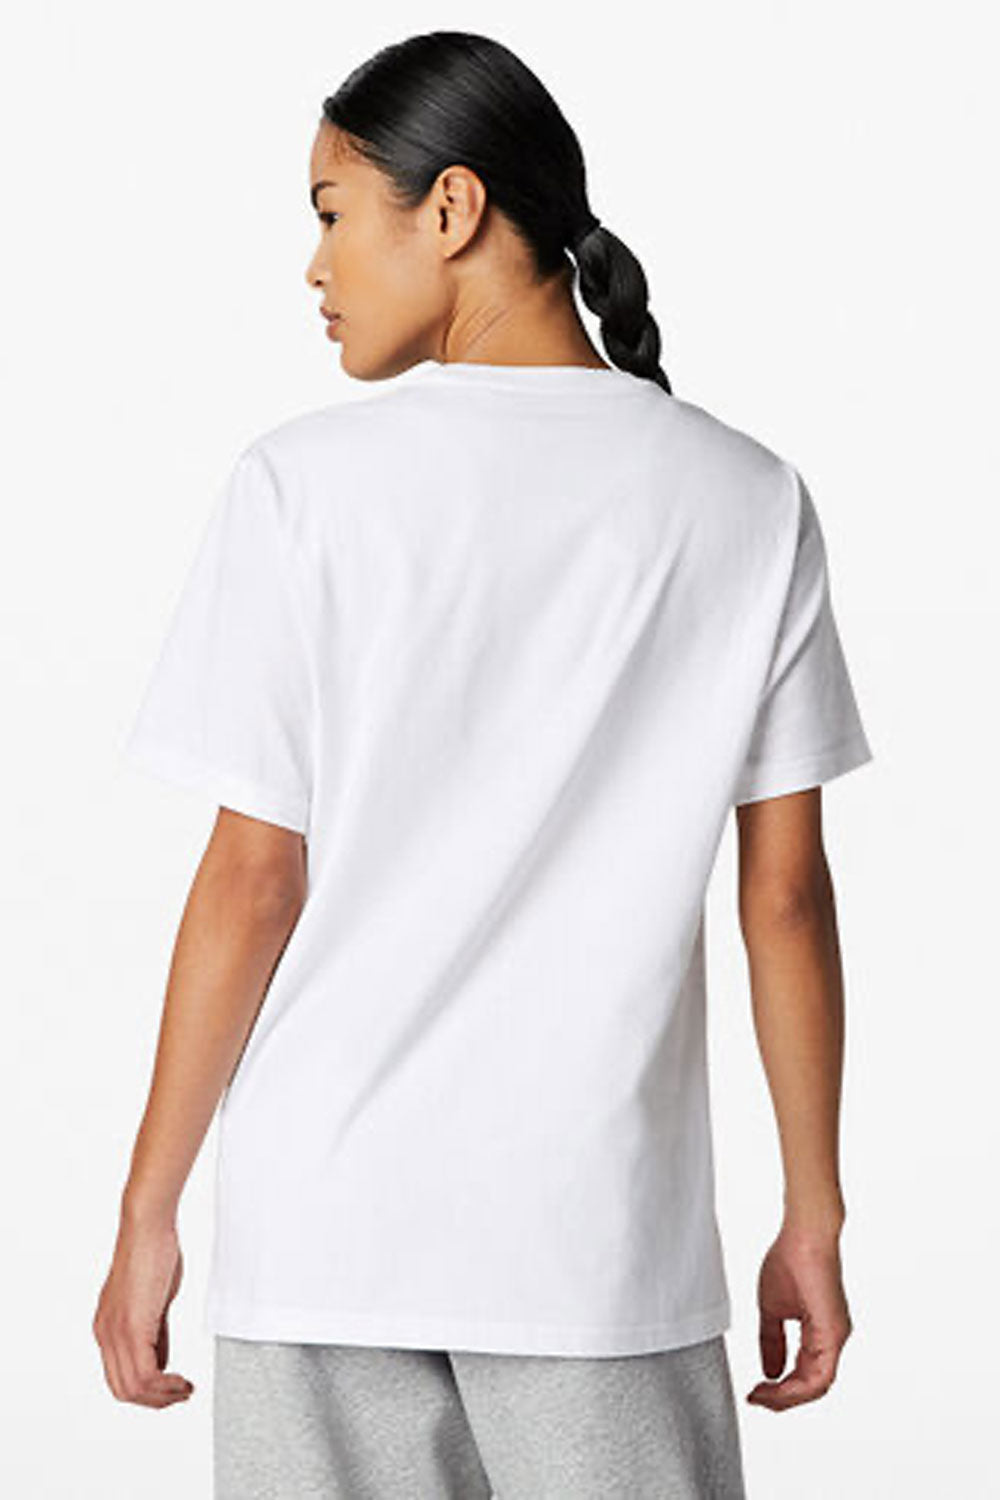 קונברס אולסטאר חולצת טישירט קצרה Chevron בצבע לבן לנשים וגברים-Converse All Star-S-נאקו